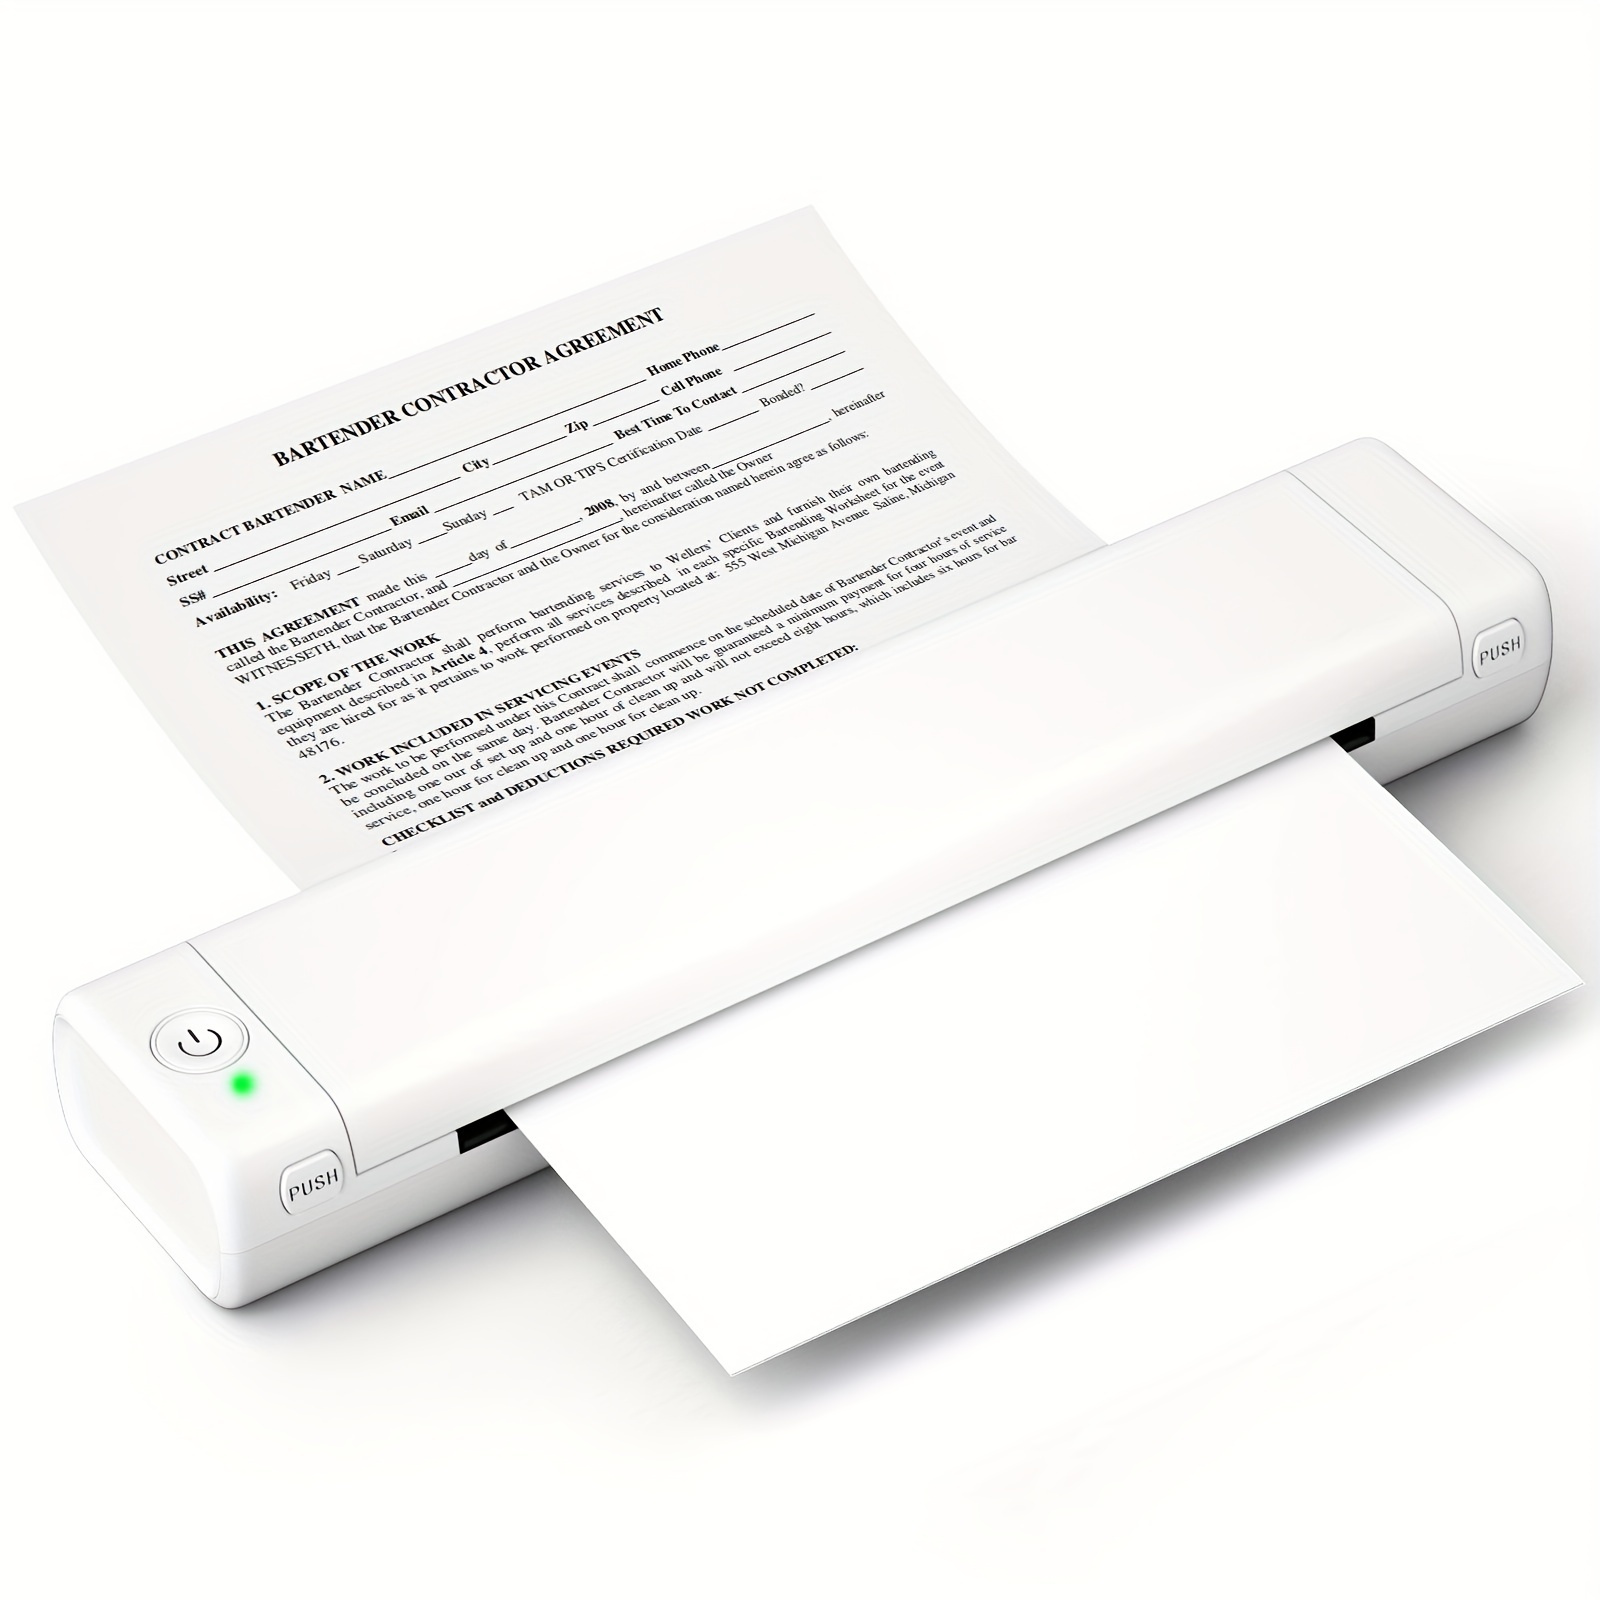 Phomemo Impresora portátil sin tinta – Impresora portátil inalámbrica para  viajes, compatible con iOS y Android y laptop, mini impresora móvil